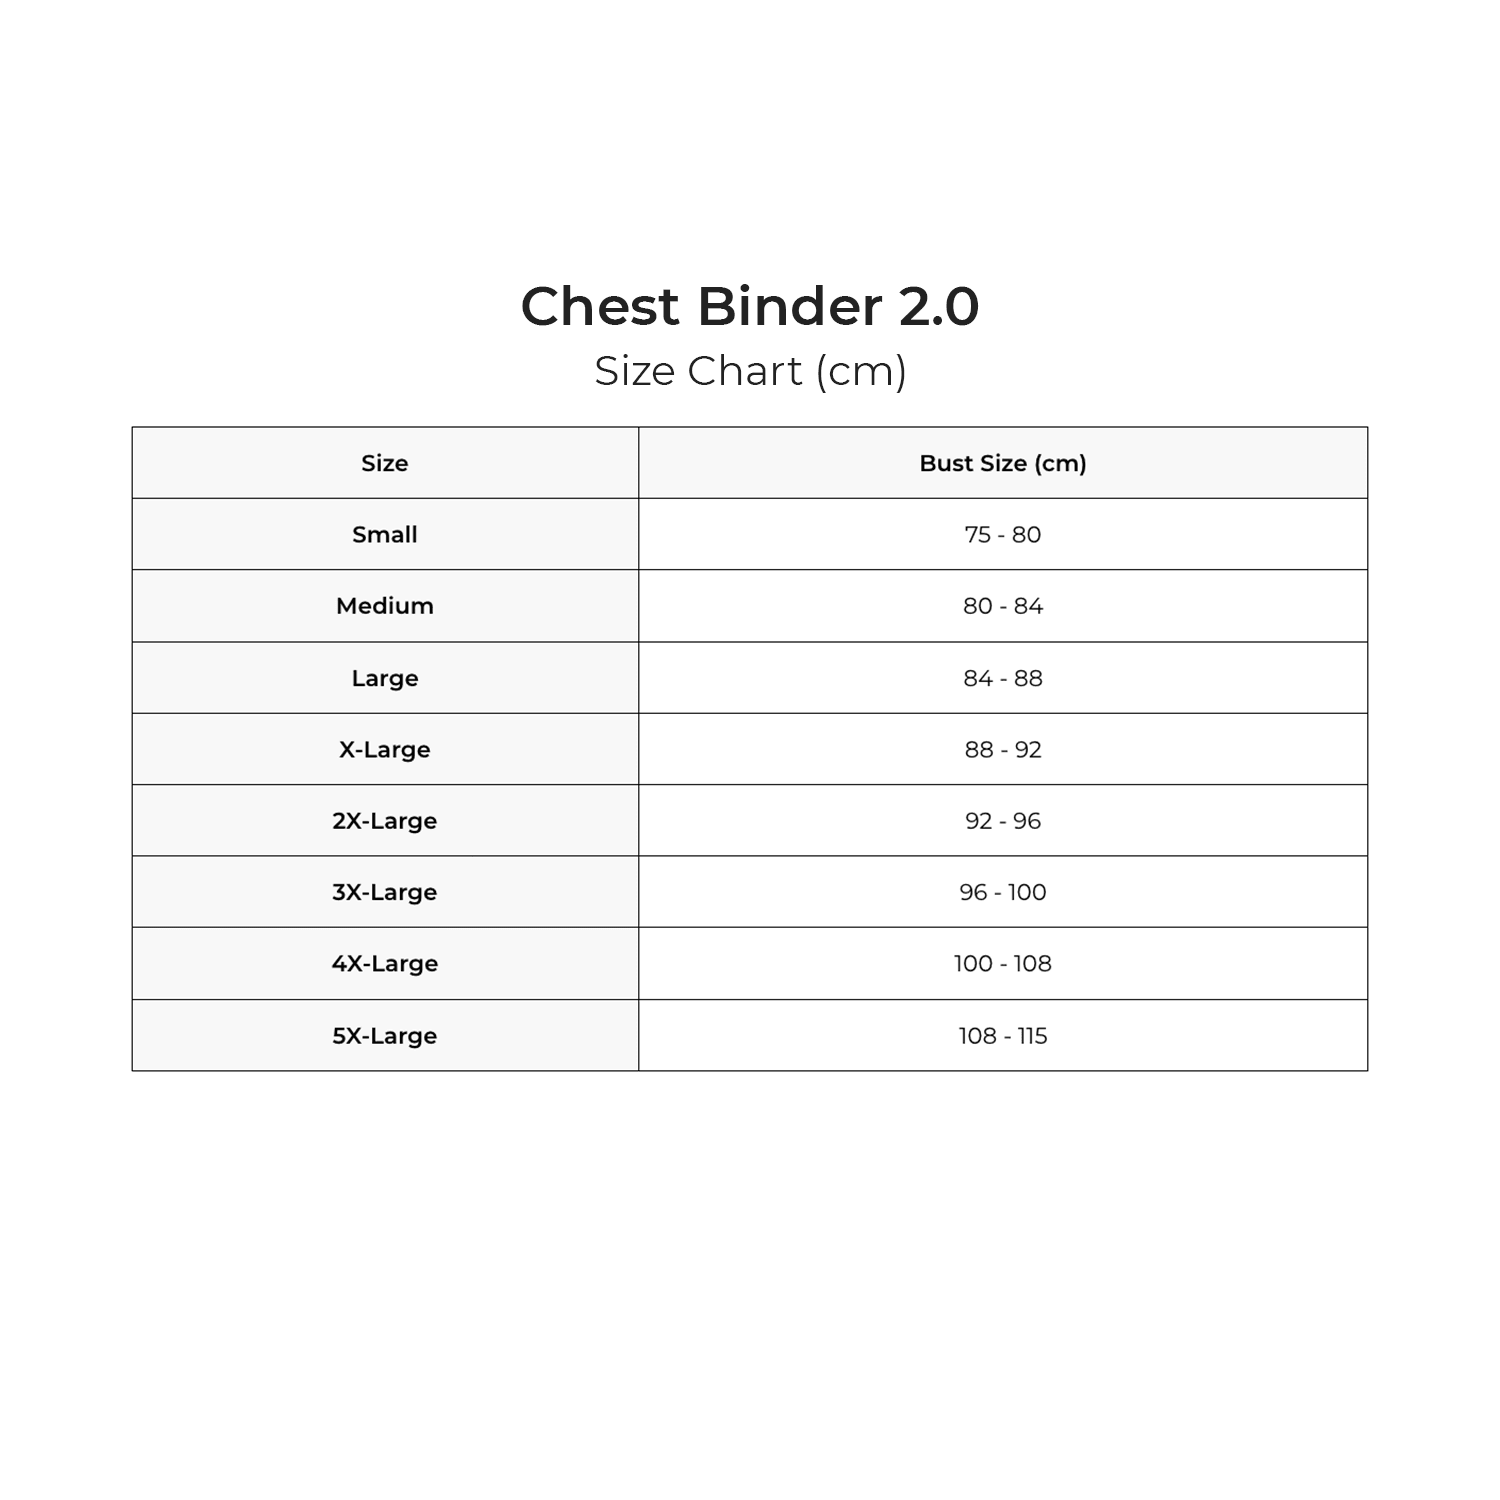 Chest Binder 2.0